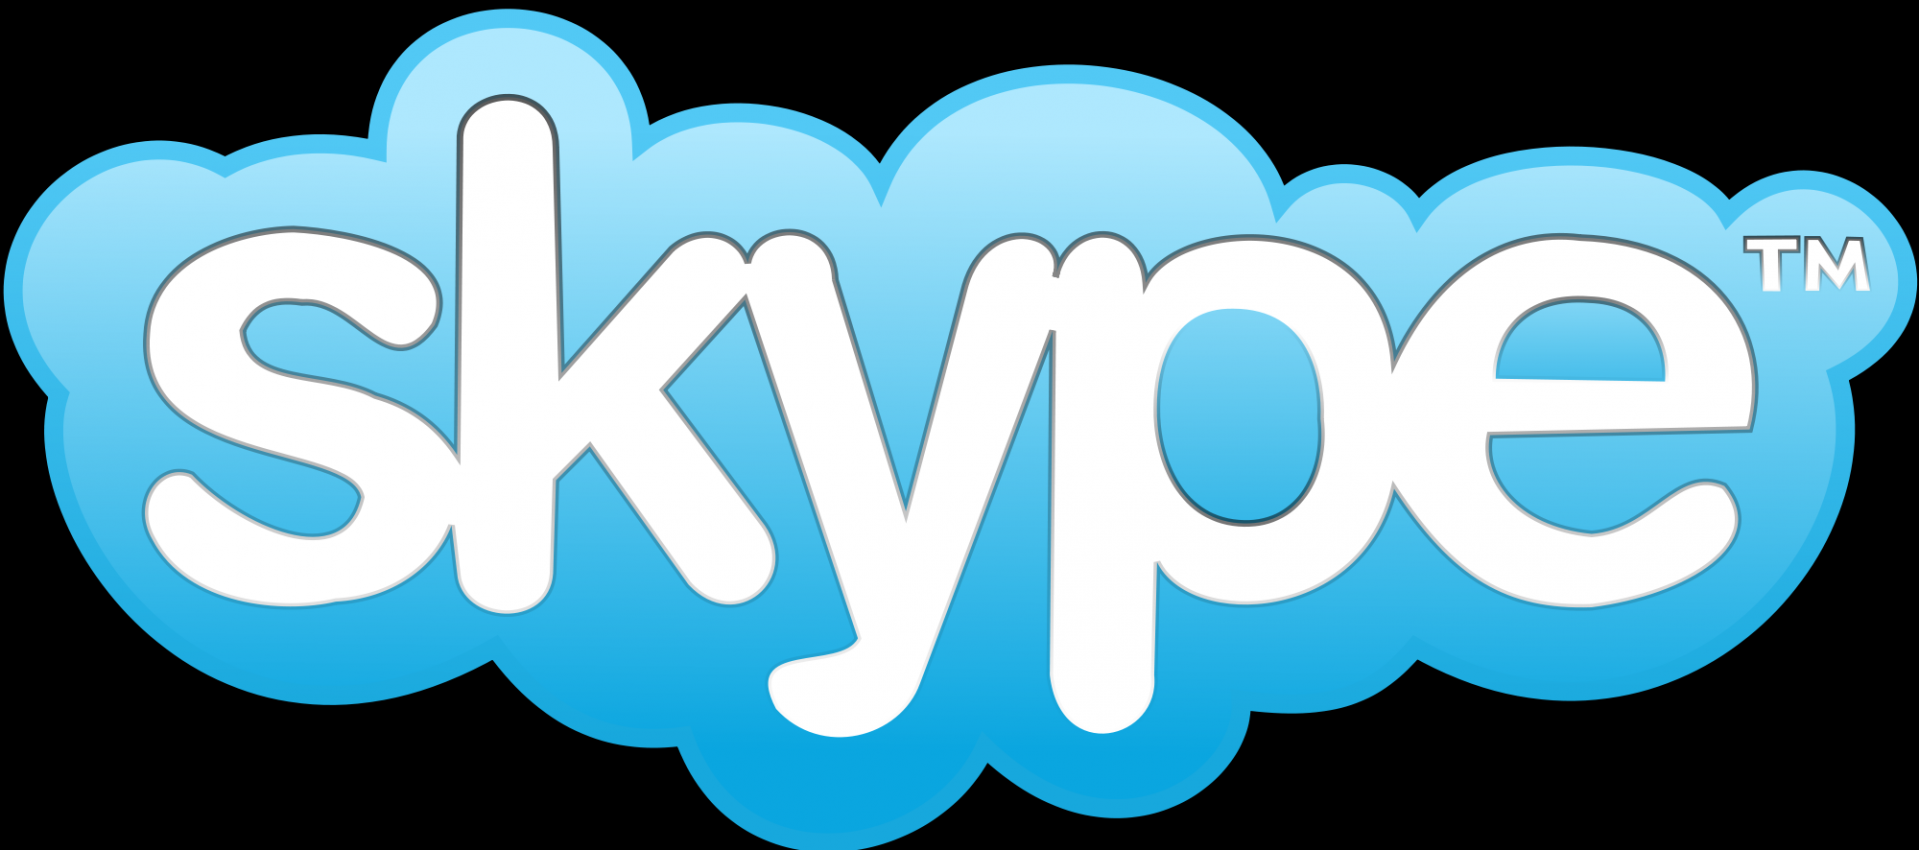 skype怎么读音发音英语单词_skype for business怎么读